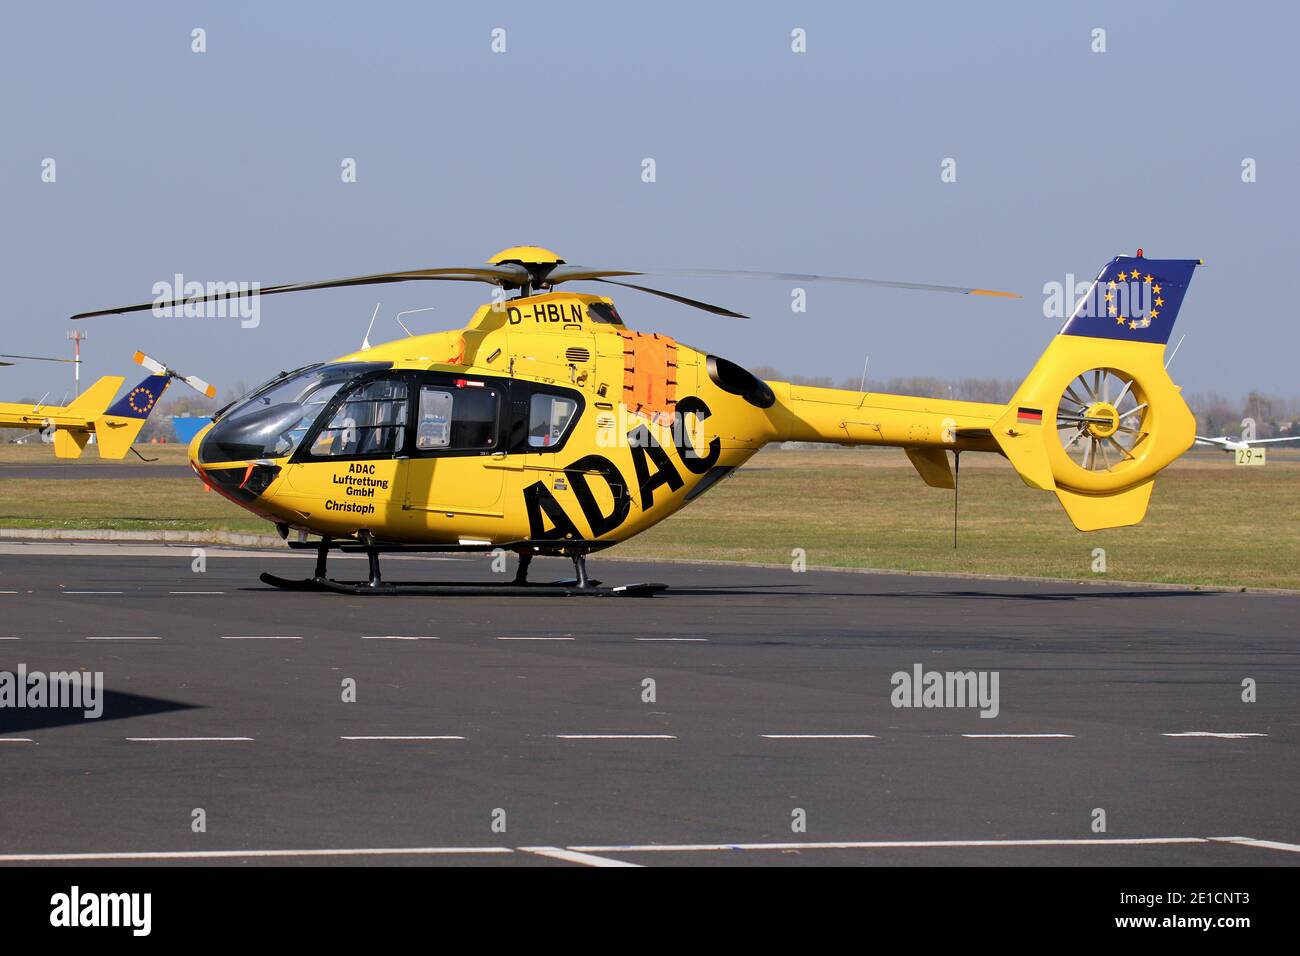 Eurocopter EC-135 P2 hélicoptère de sauvetage ADAC Luftrettung avec enregistrement D-HBLN à l'aéroport de Bonn Hangelar. Banque D'Images